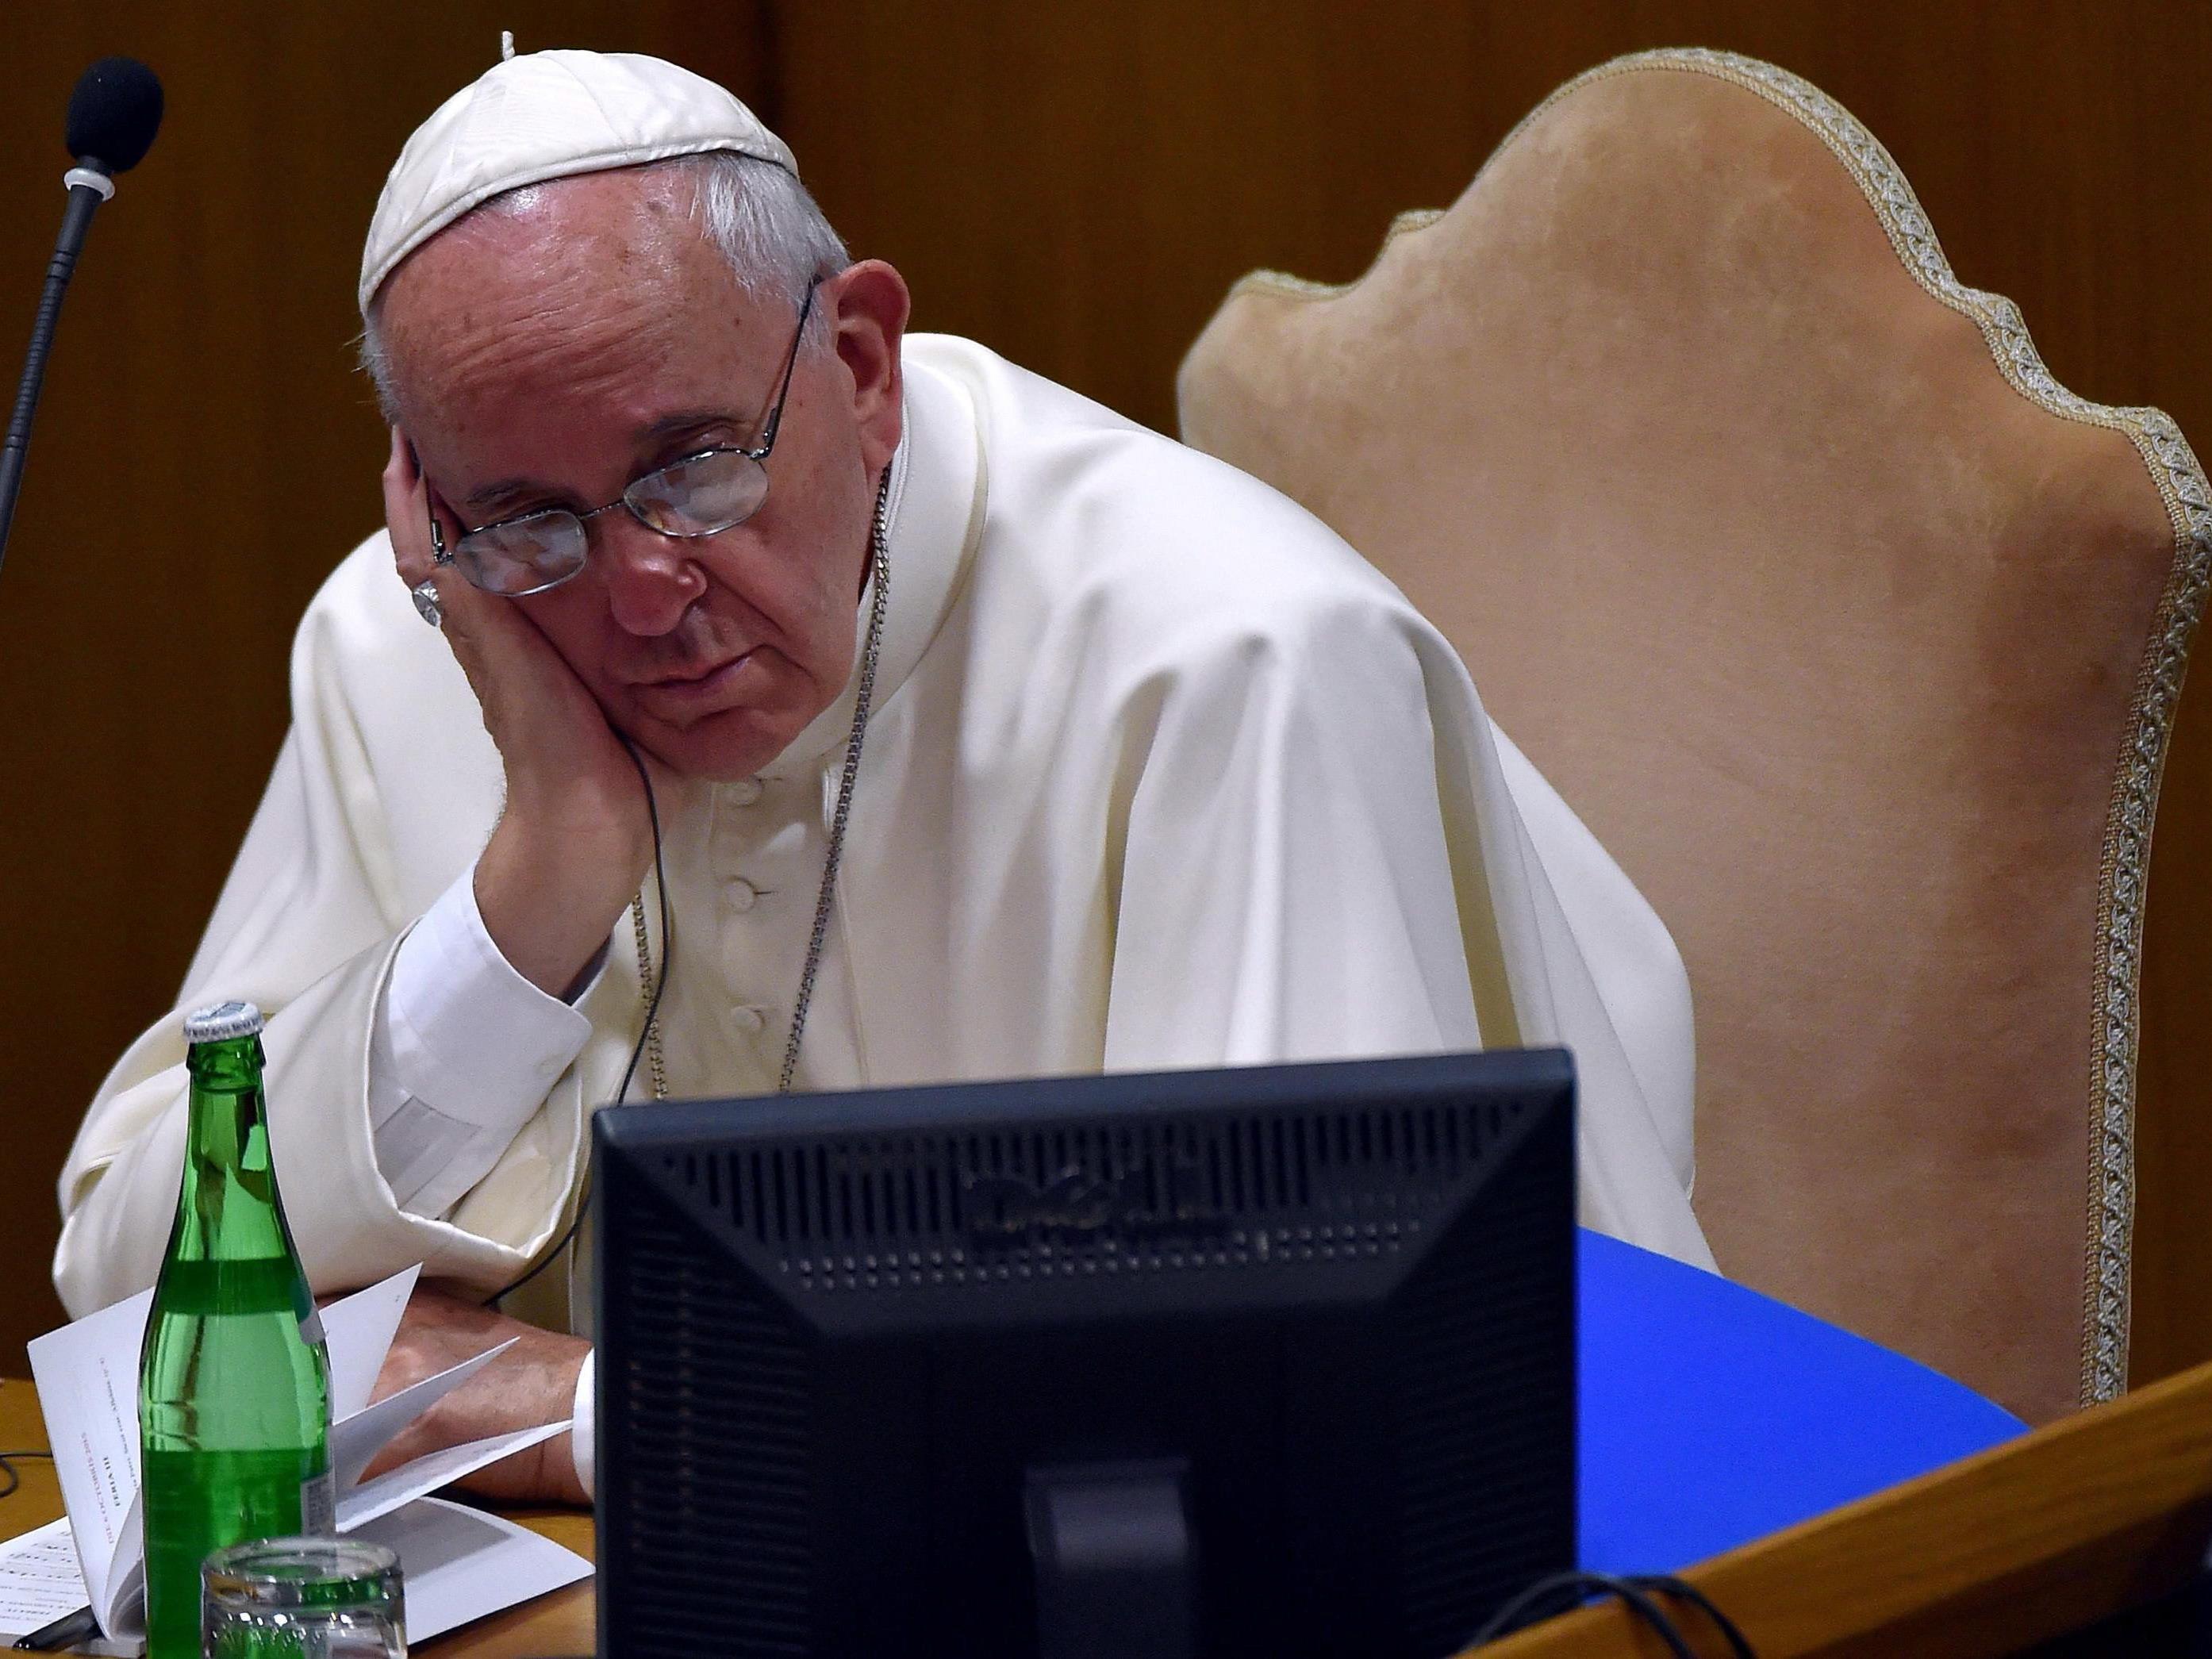 Der Beschwerdebrief für Papst Franzsiskus sollte privat zugestellt werden